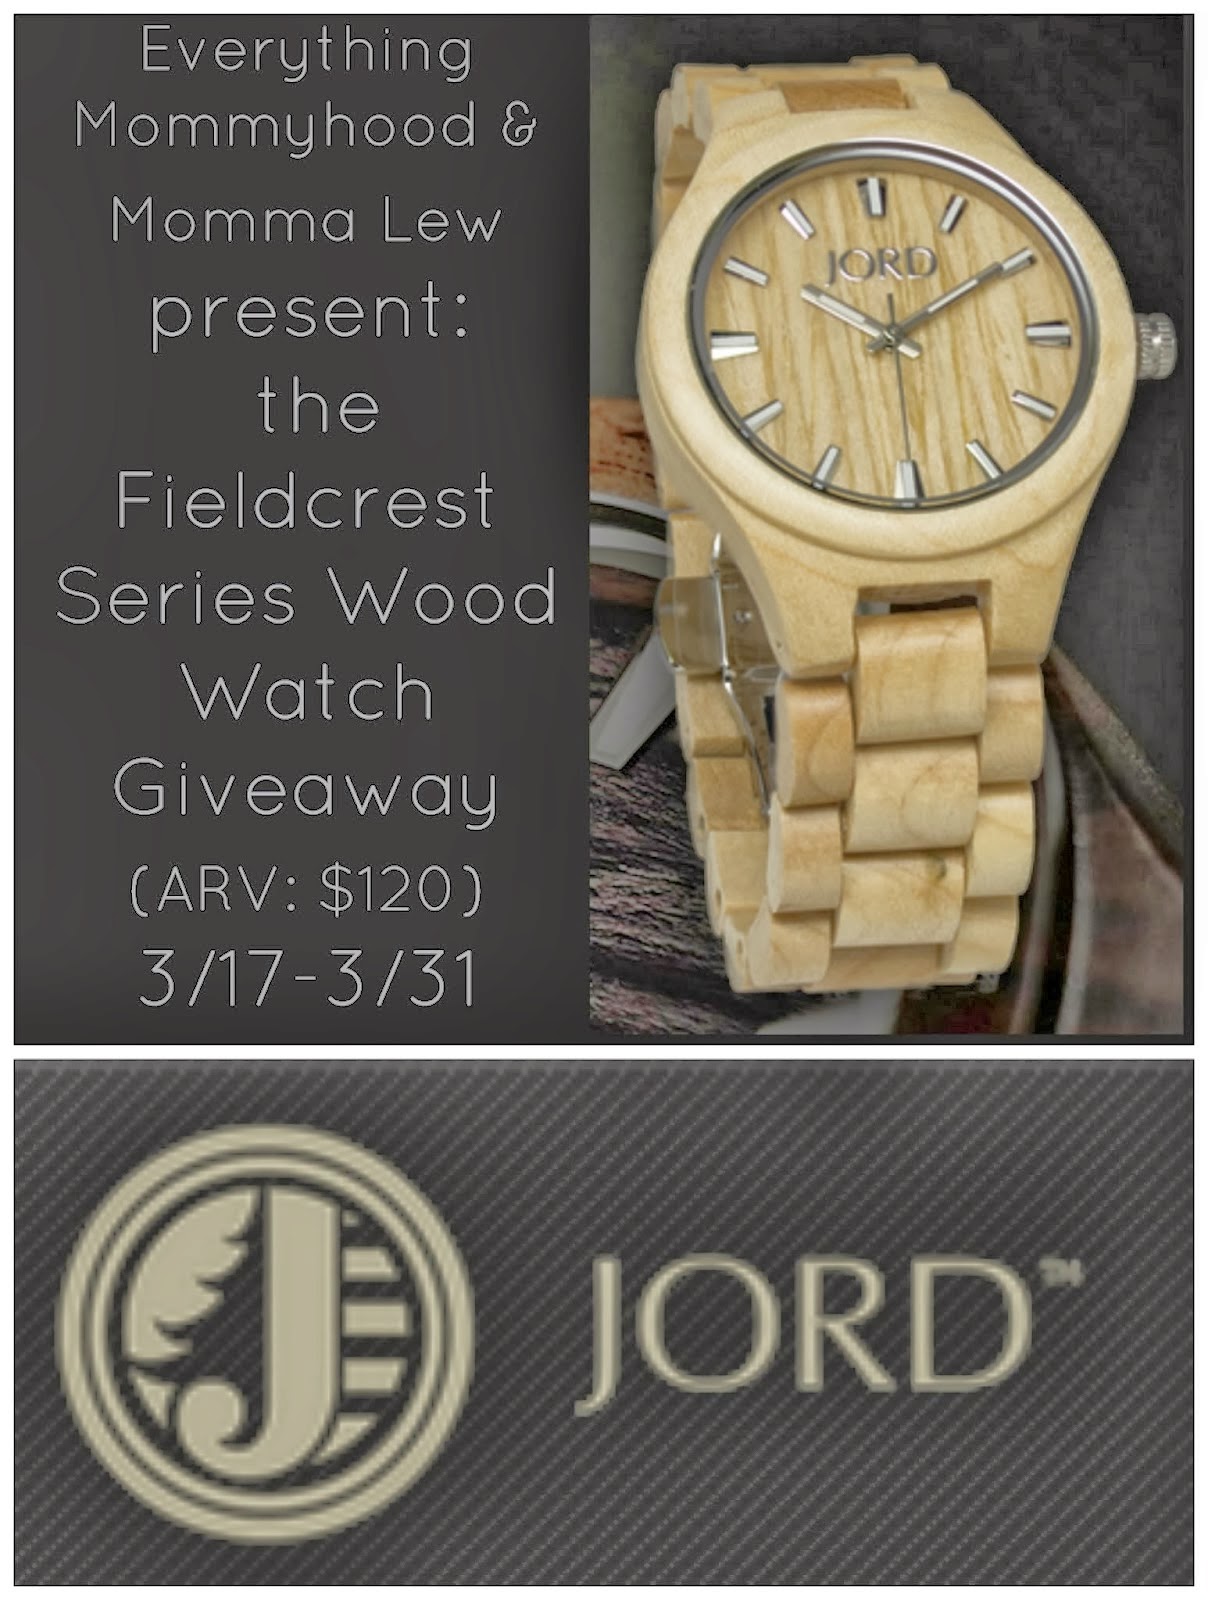 JORD Fieldcrest Series Wood Watch